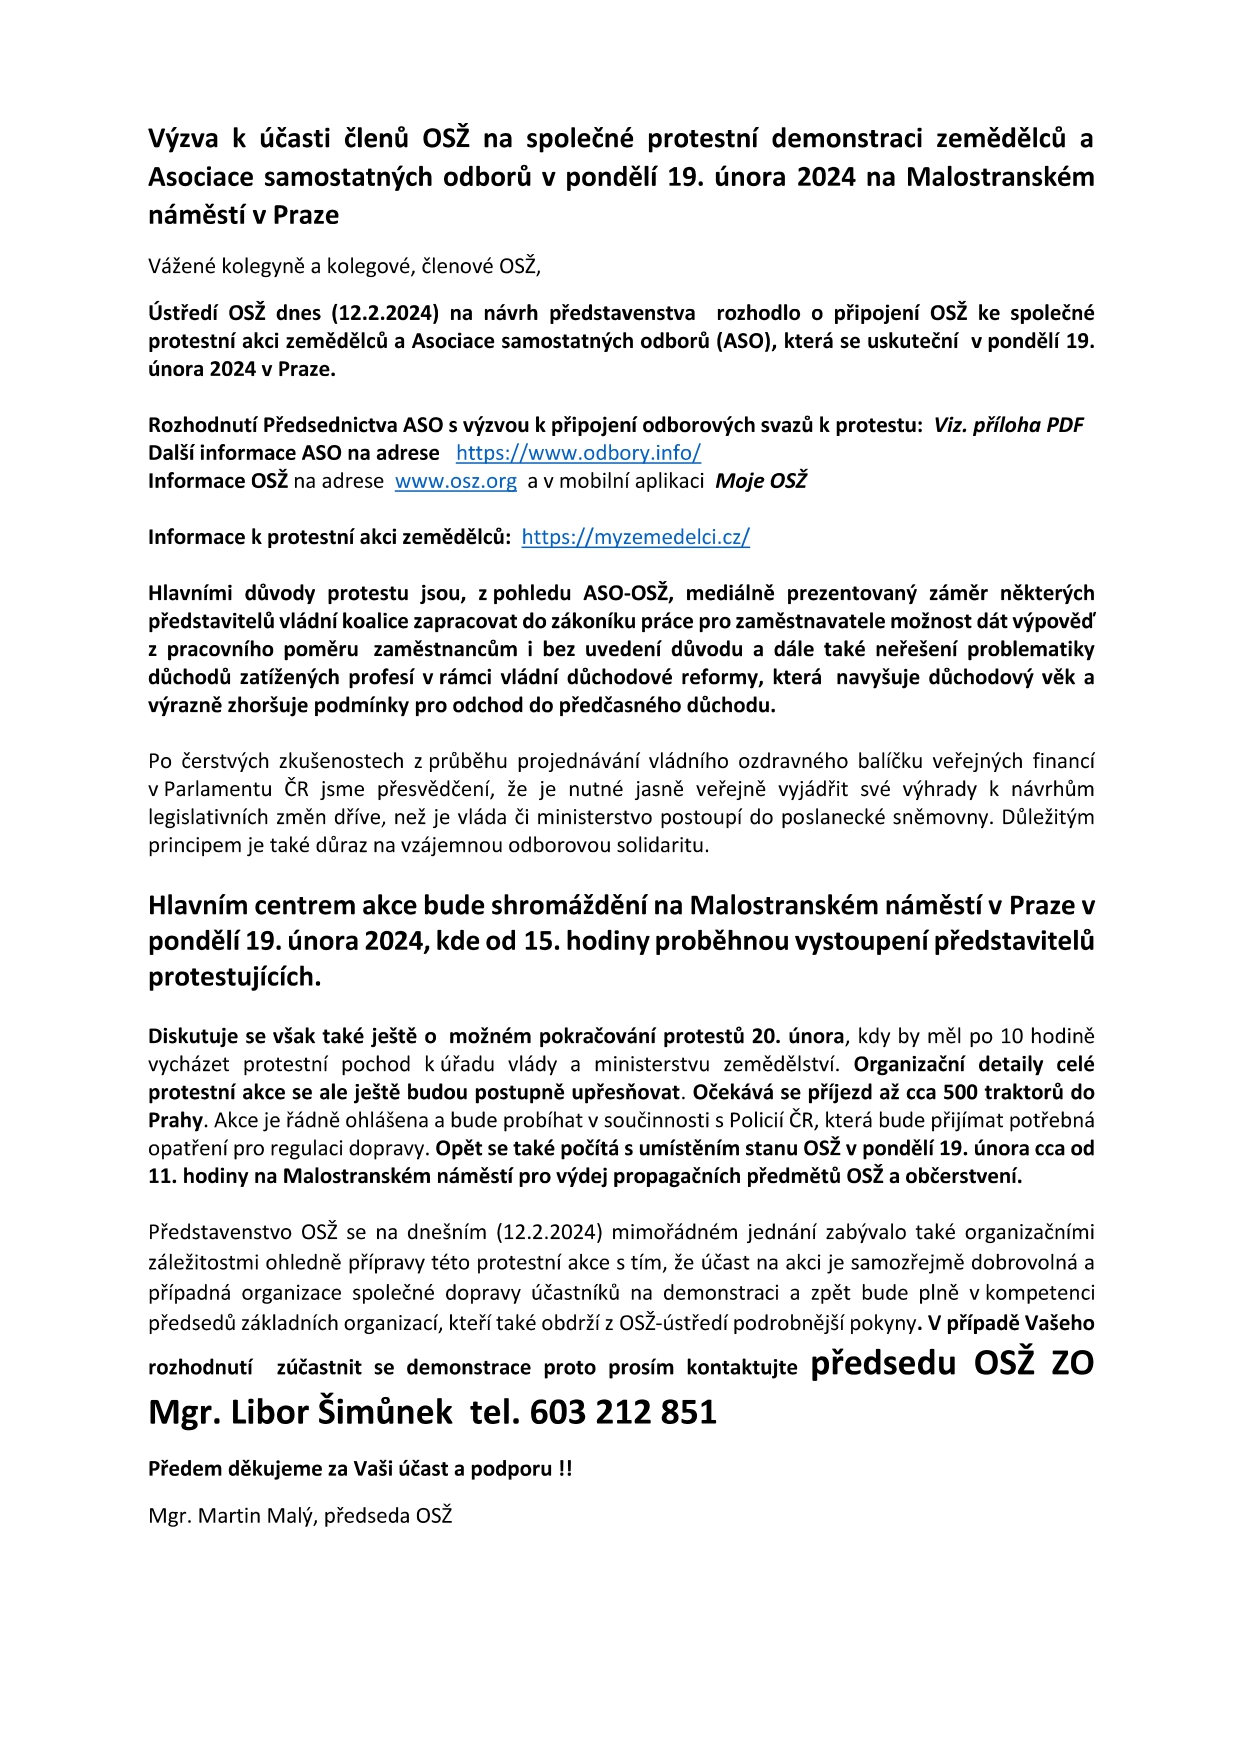 Výzva k účasti na společné protestní akci zemědělců a ASO-OSŽ 19. února 2024 v Praze